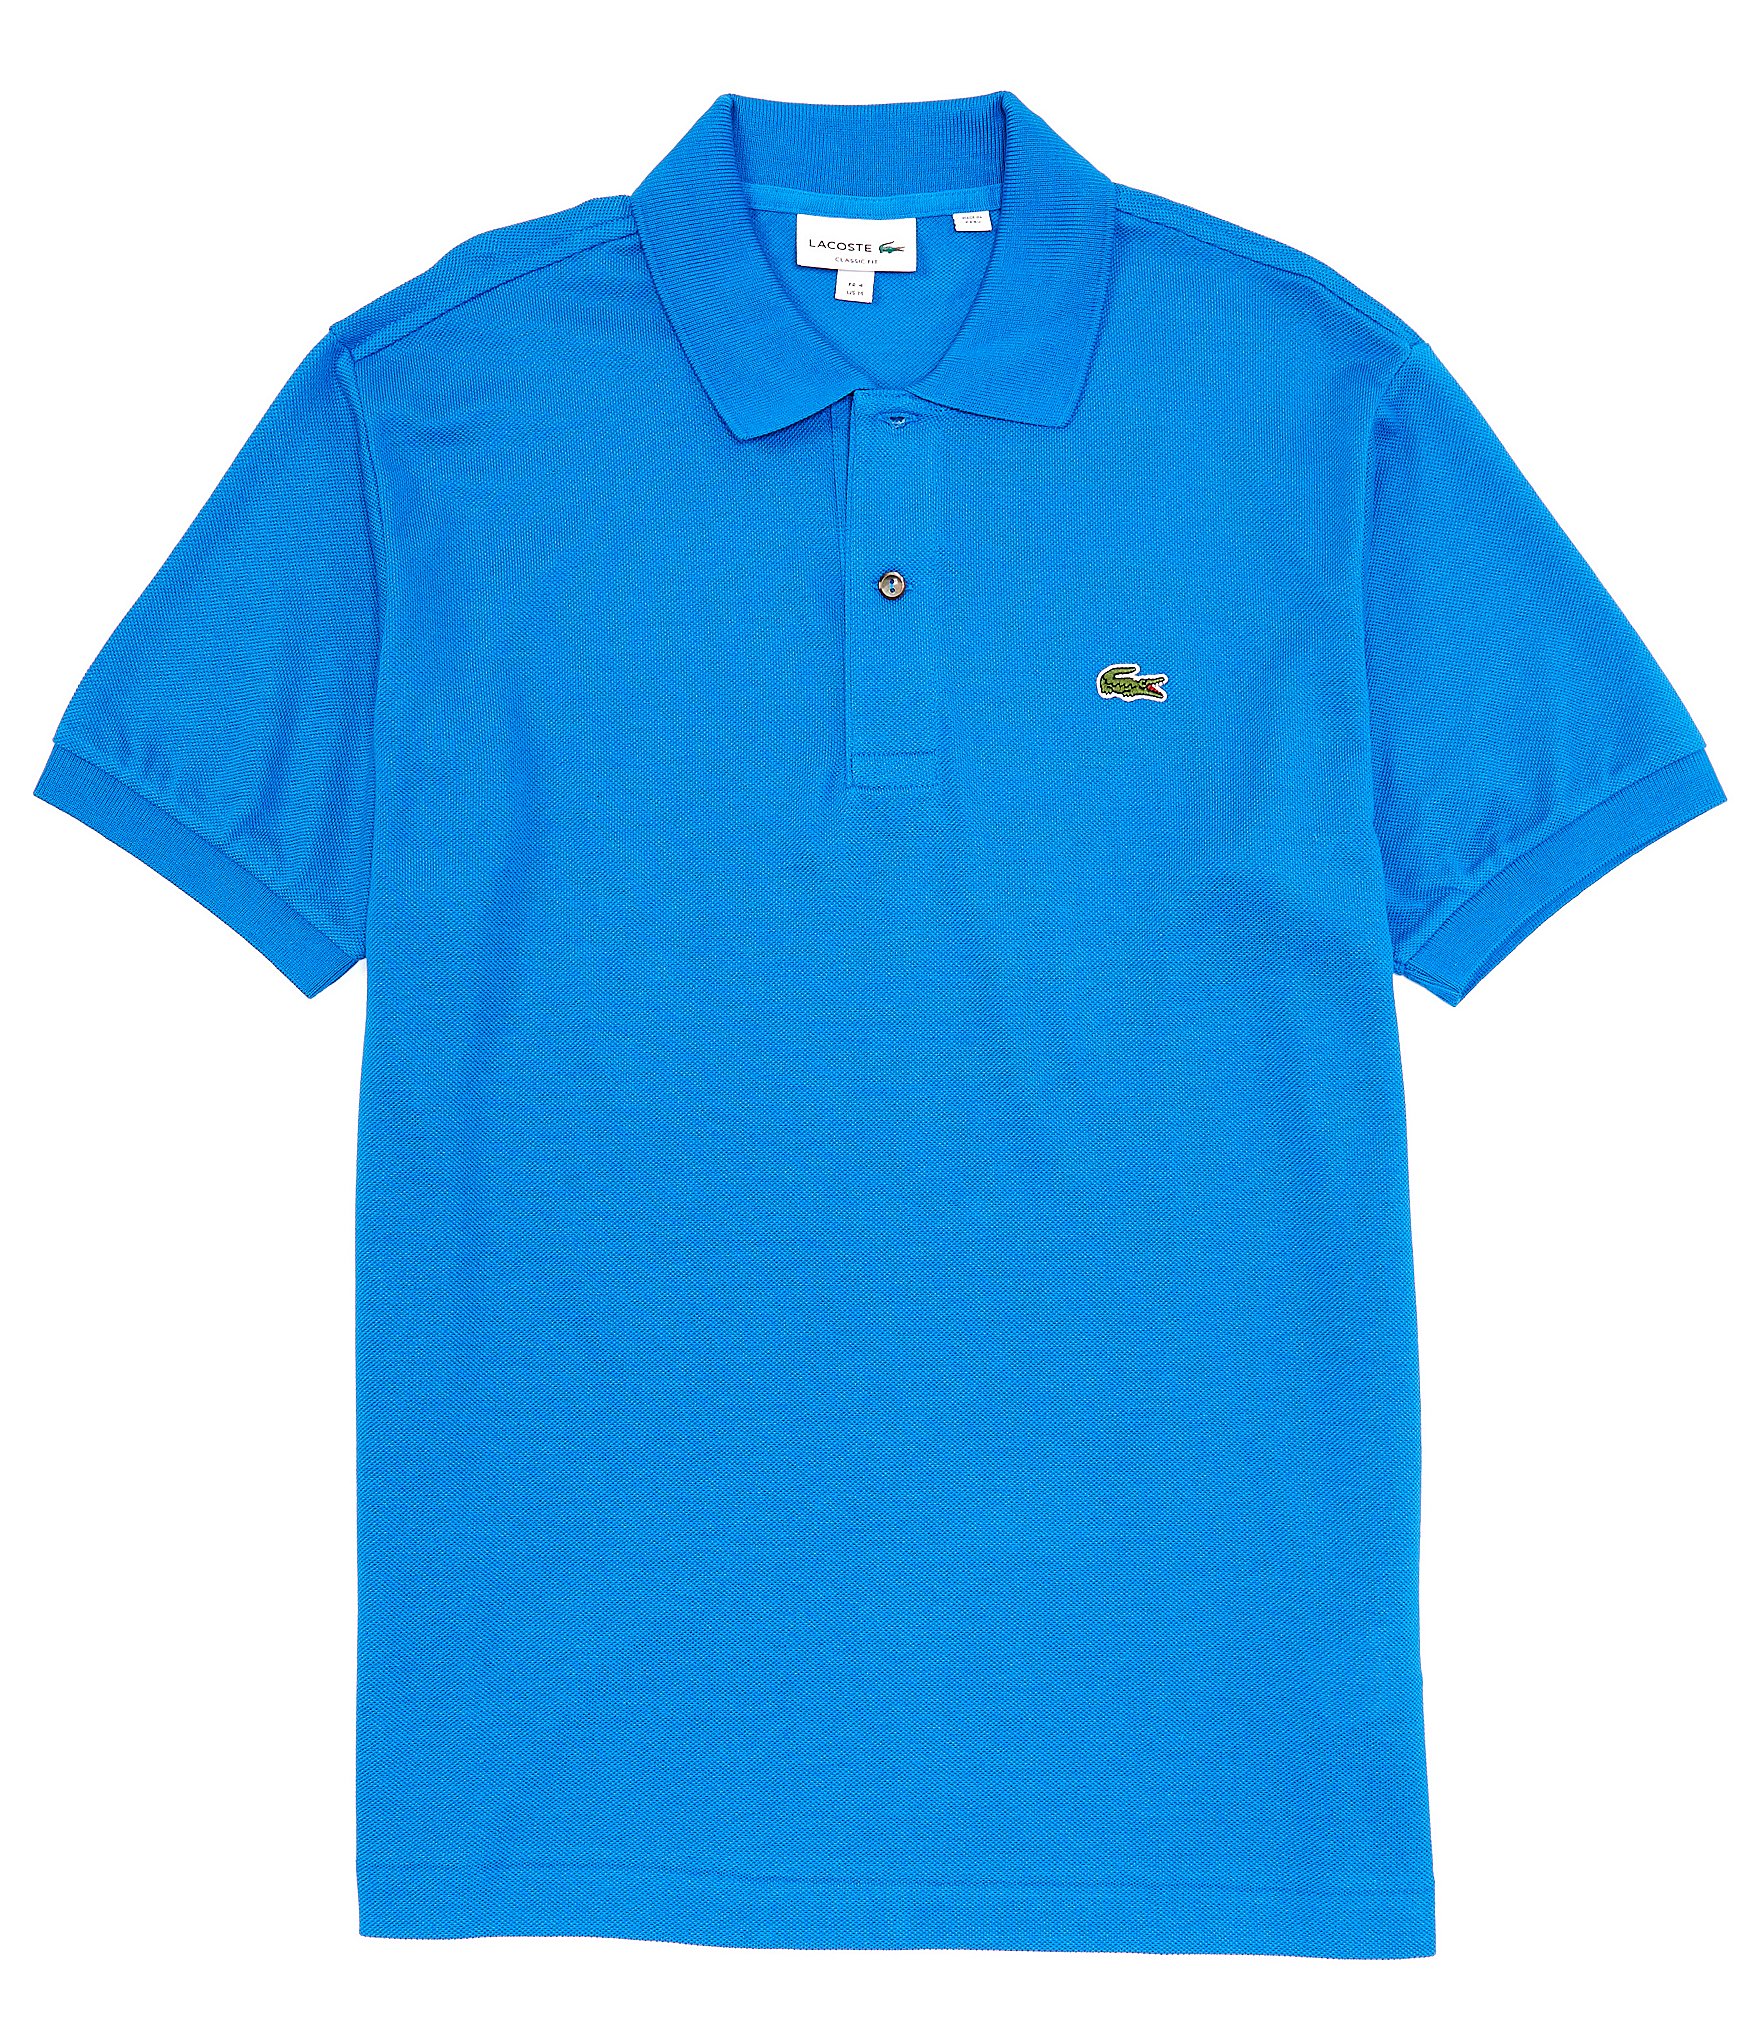 bijwoord Interactie gemeenschap Lacoste Classic Pique Short-Sleeve Polo Shirt | Dillard's